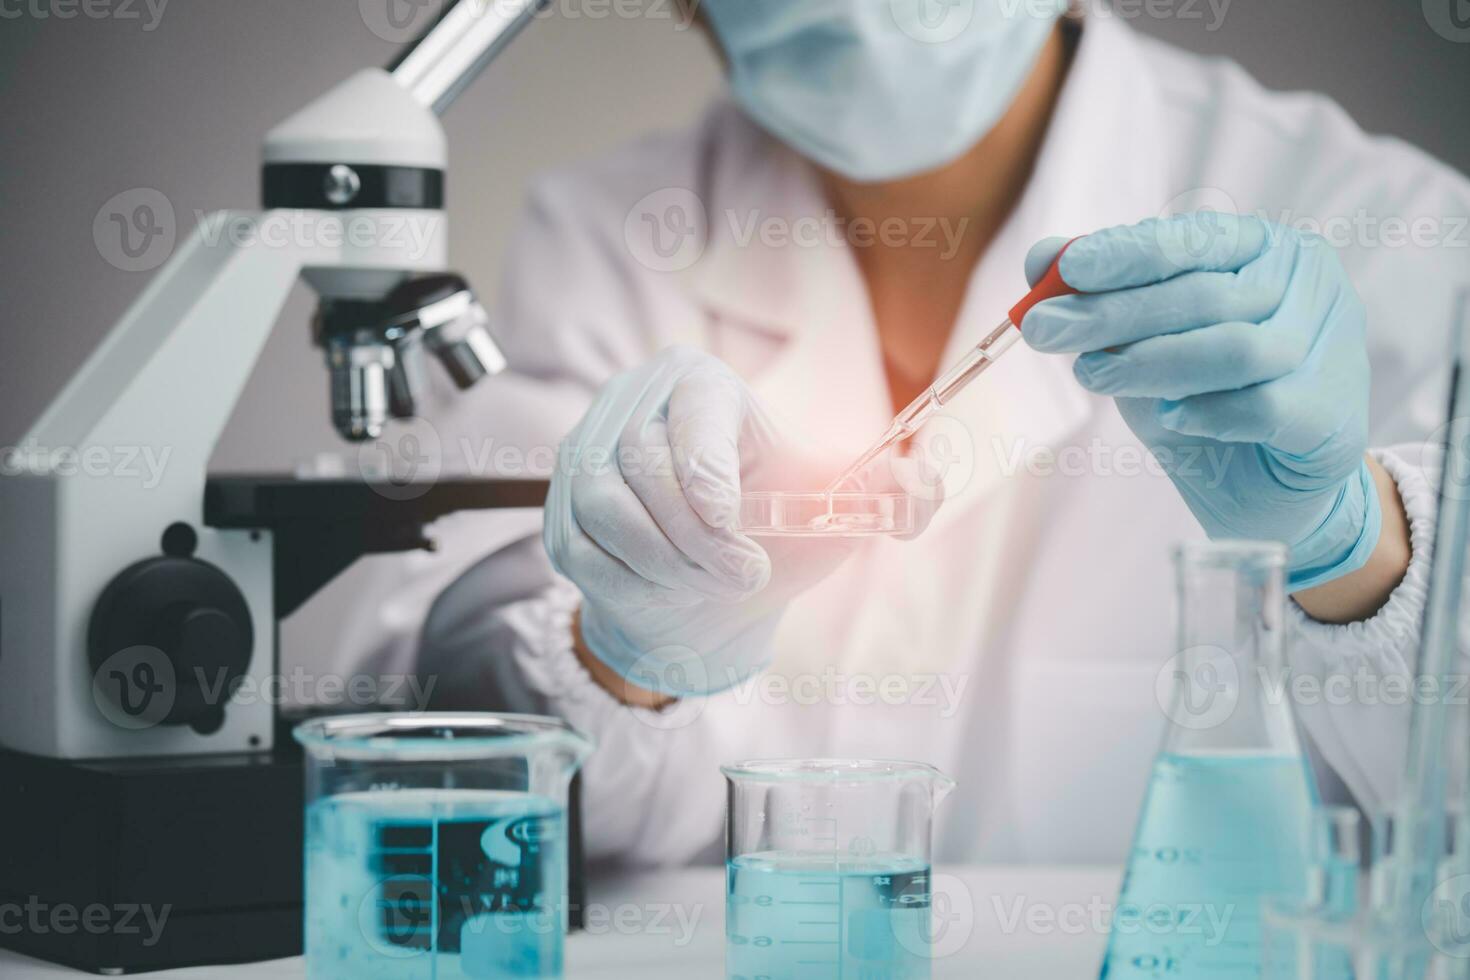 medicinsk utveckling laboratorium, biokemisk forskning forskare asiatisk läkare arbetssätt med en mikroskop för vaccin utveckling i de farmaceutisk forskning laboratorium, bioteknik specialist foto